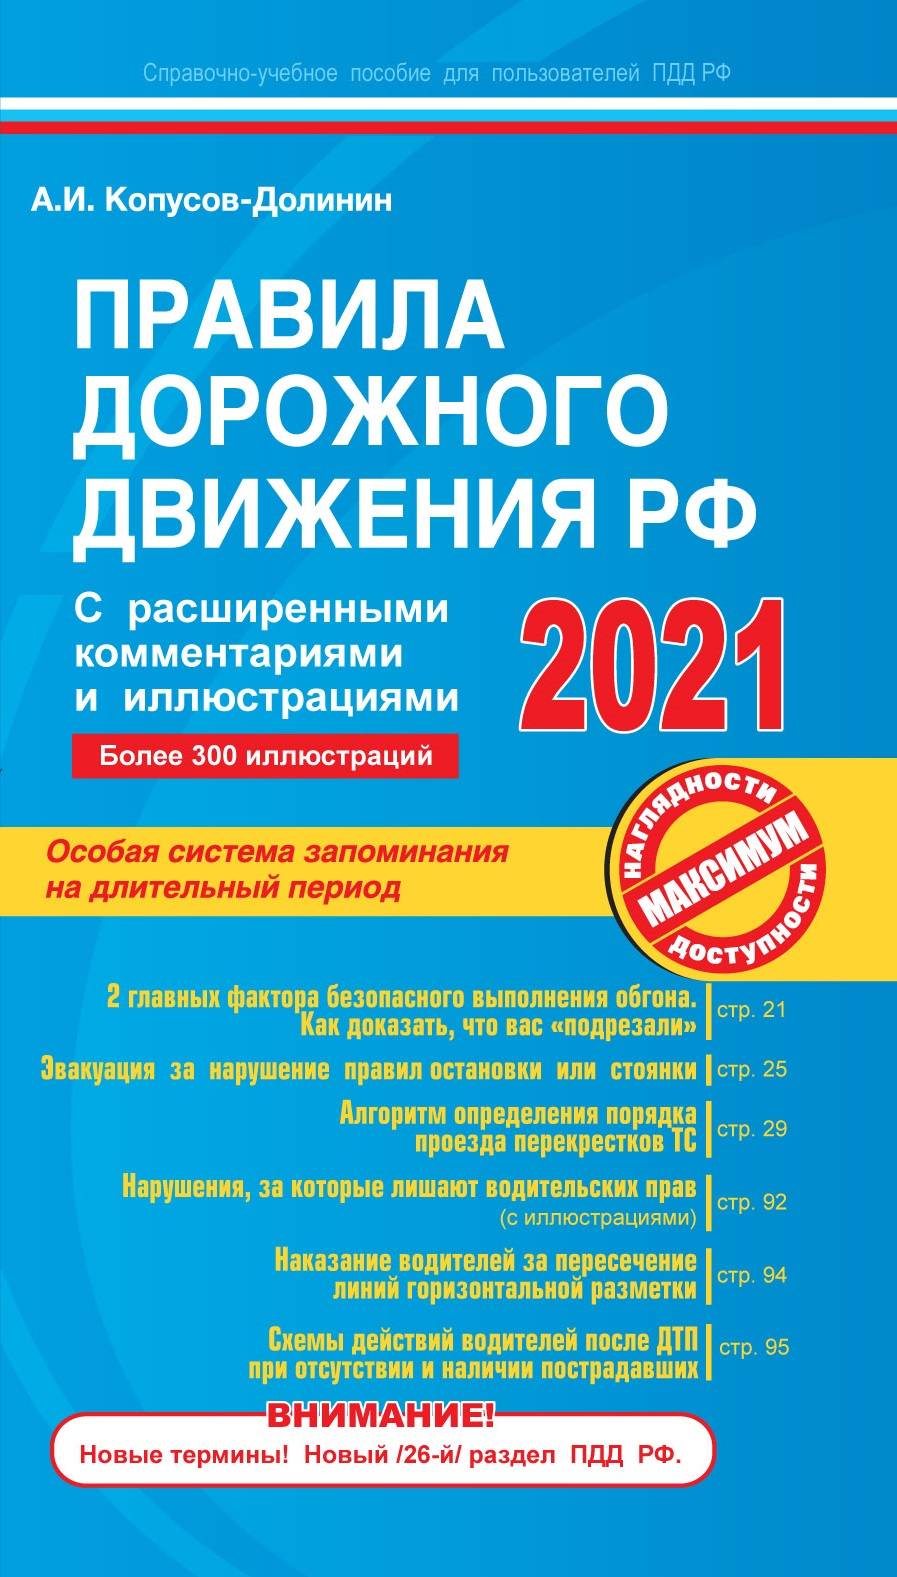 Копусов-Долинин А.И. - Правила дорожного движения РФ с расширенными комментариями и иллюстрациями с изм. и доп. на 2021 г. 